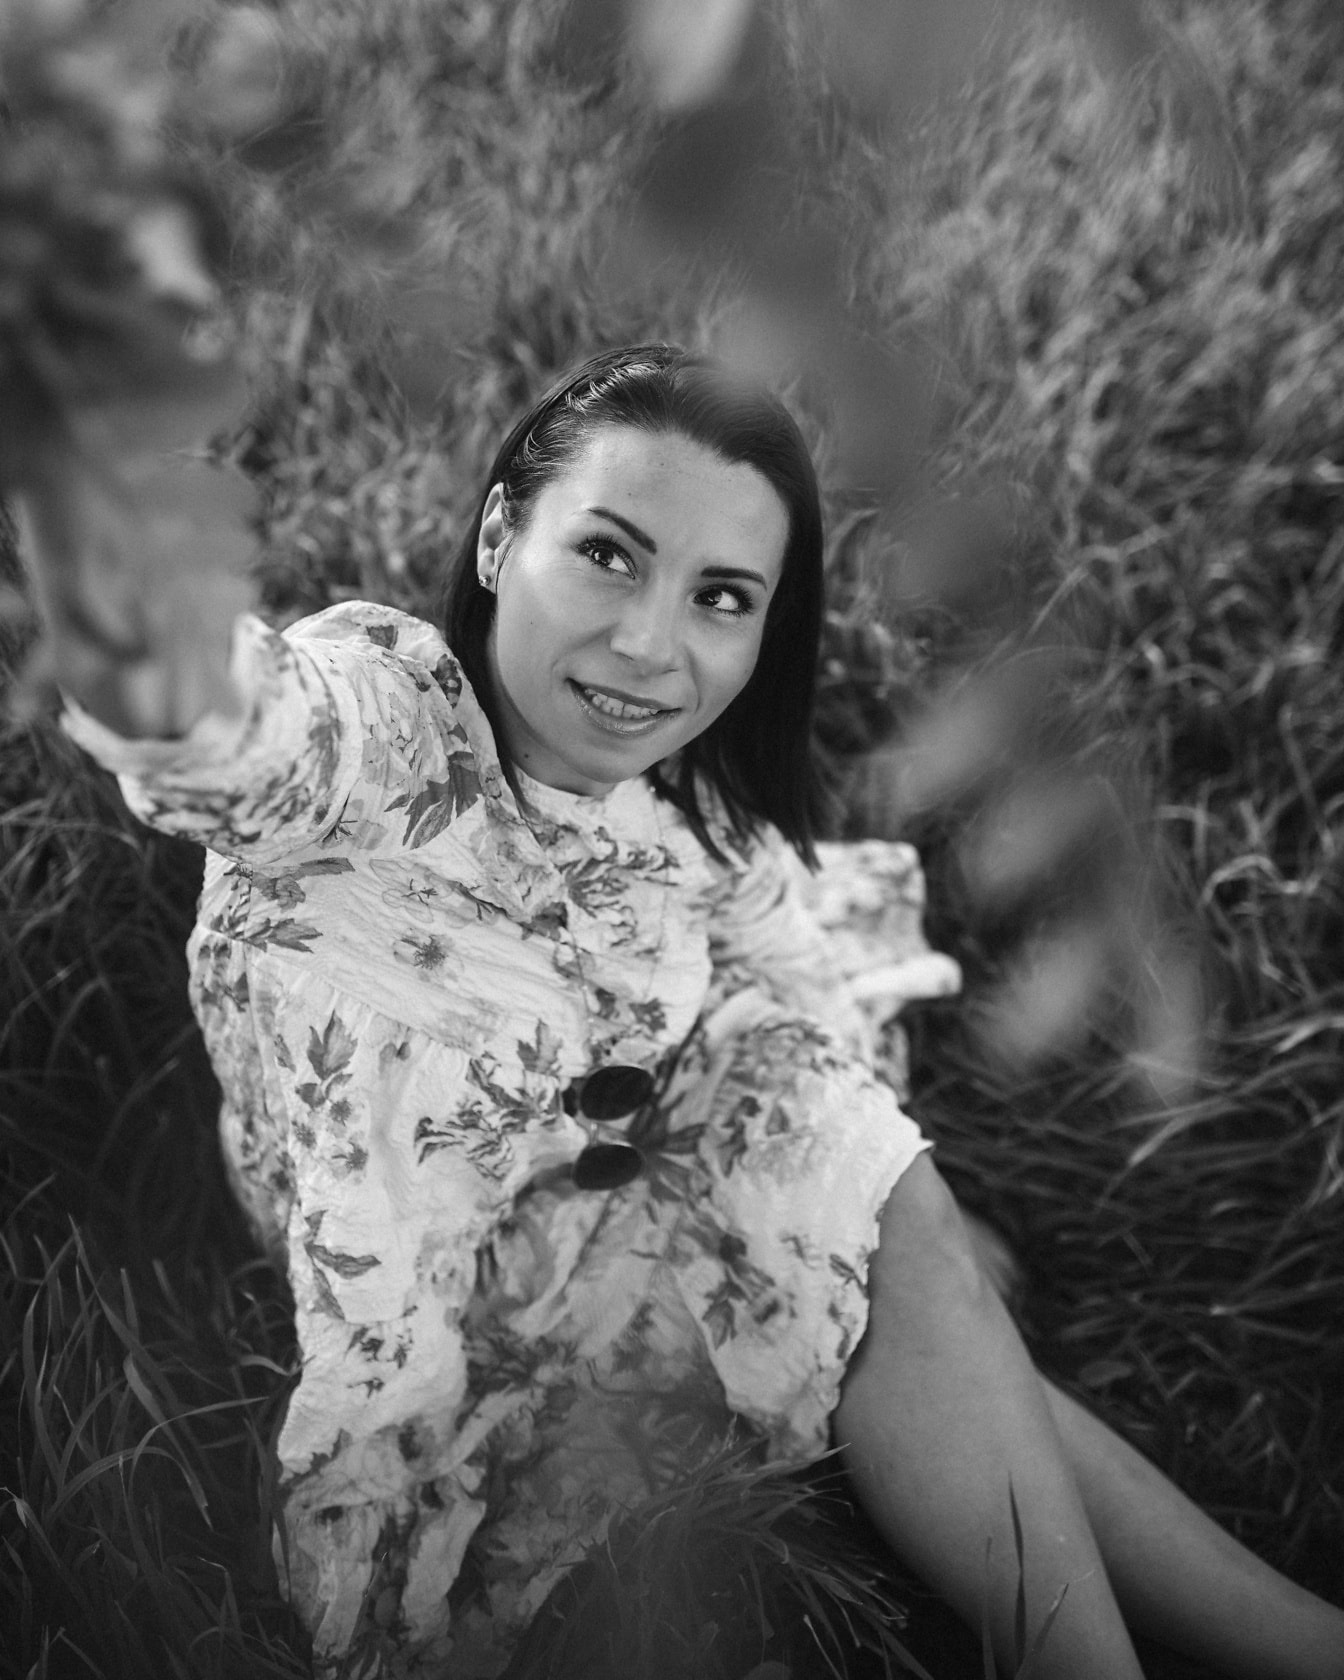 Fekete-fehér portré egy gyönyörű, mosolygós nőről, aki a fűben ül